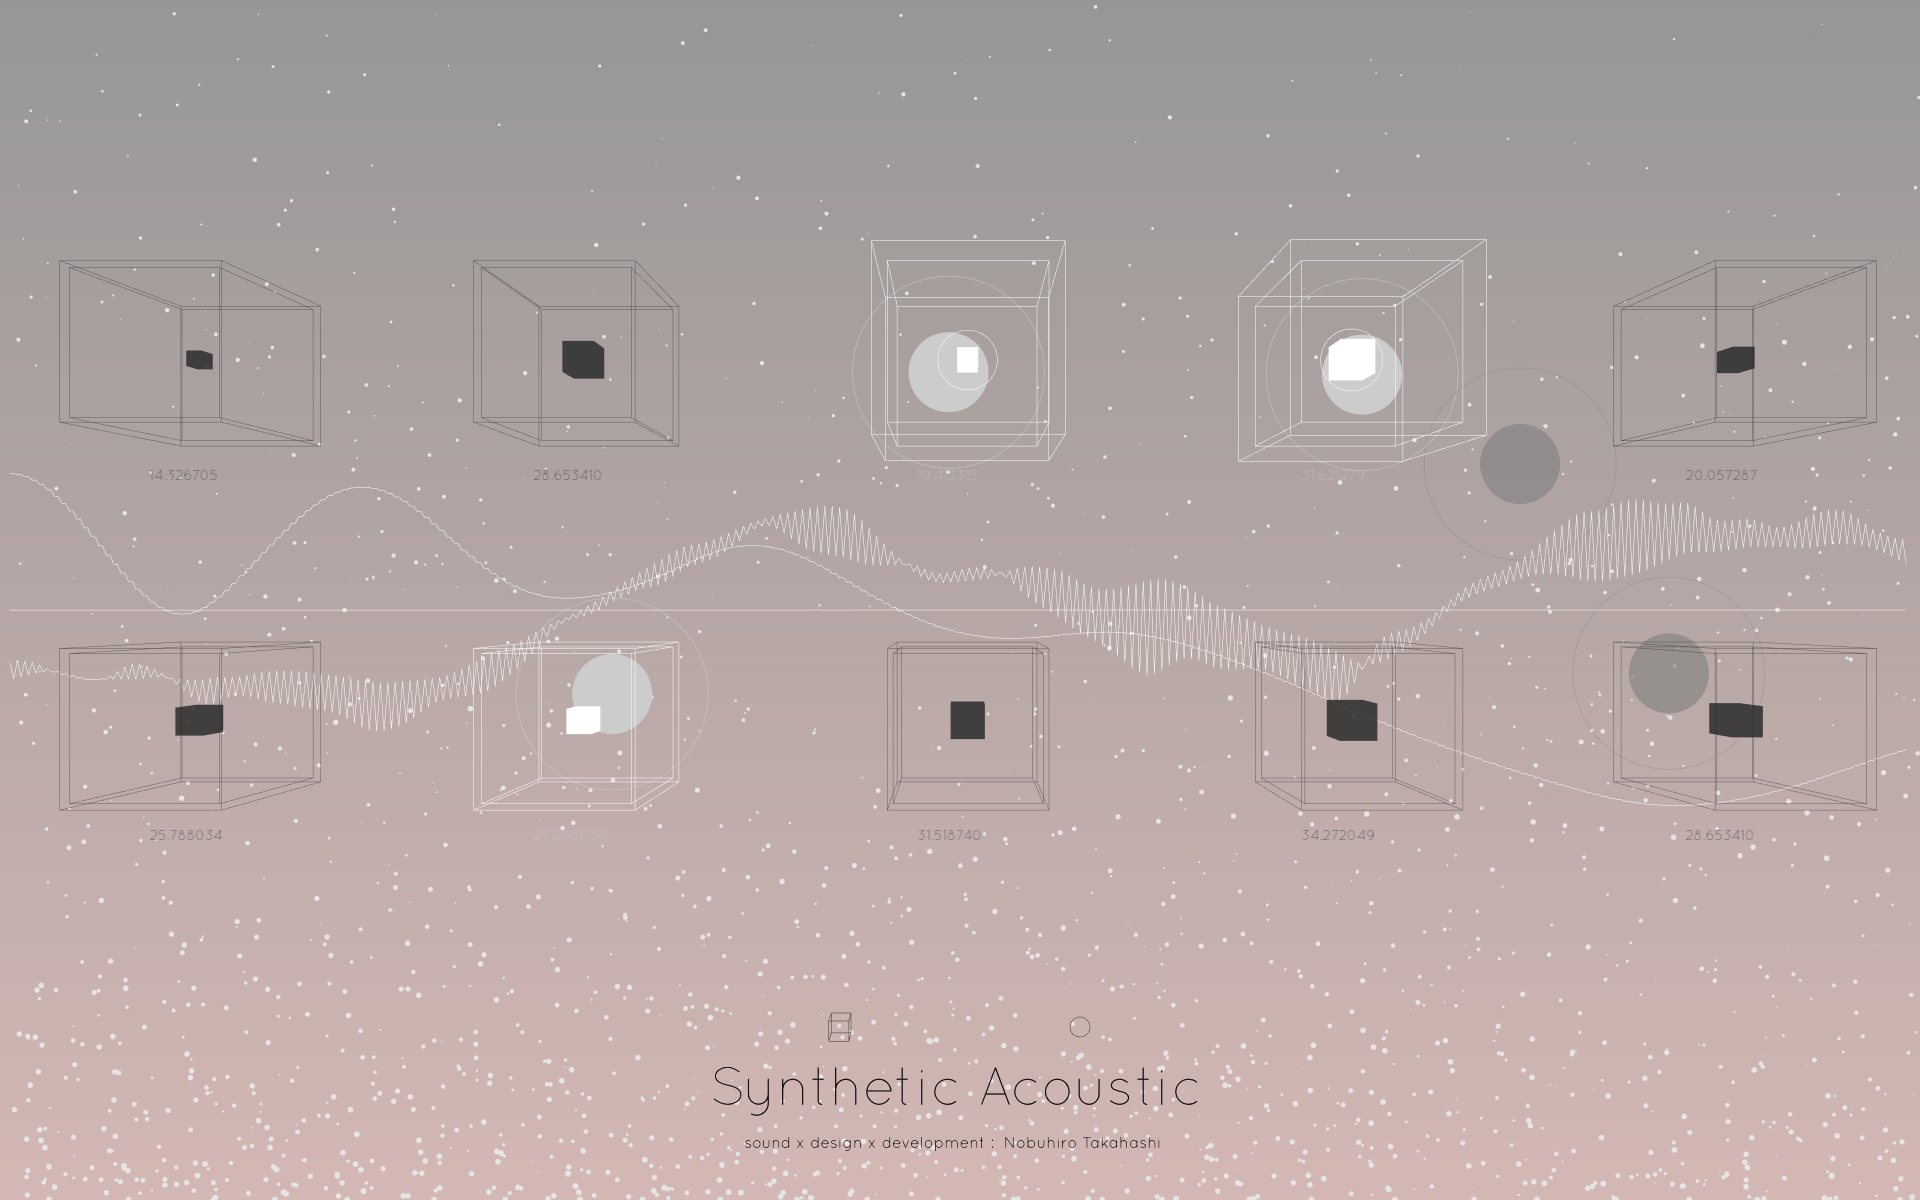 空間に浮かぶオブジェクトを指で操作して演奏する「Synthetic Acoustic」を作りました